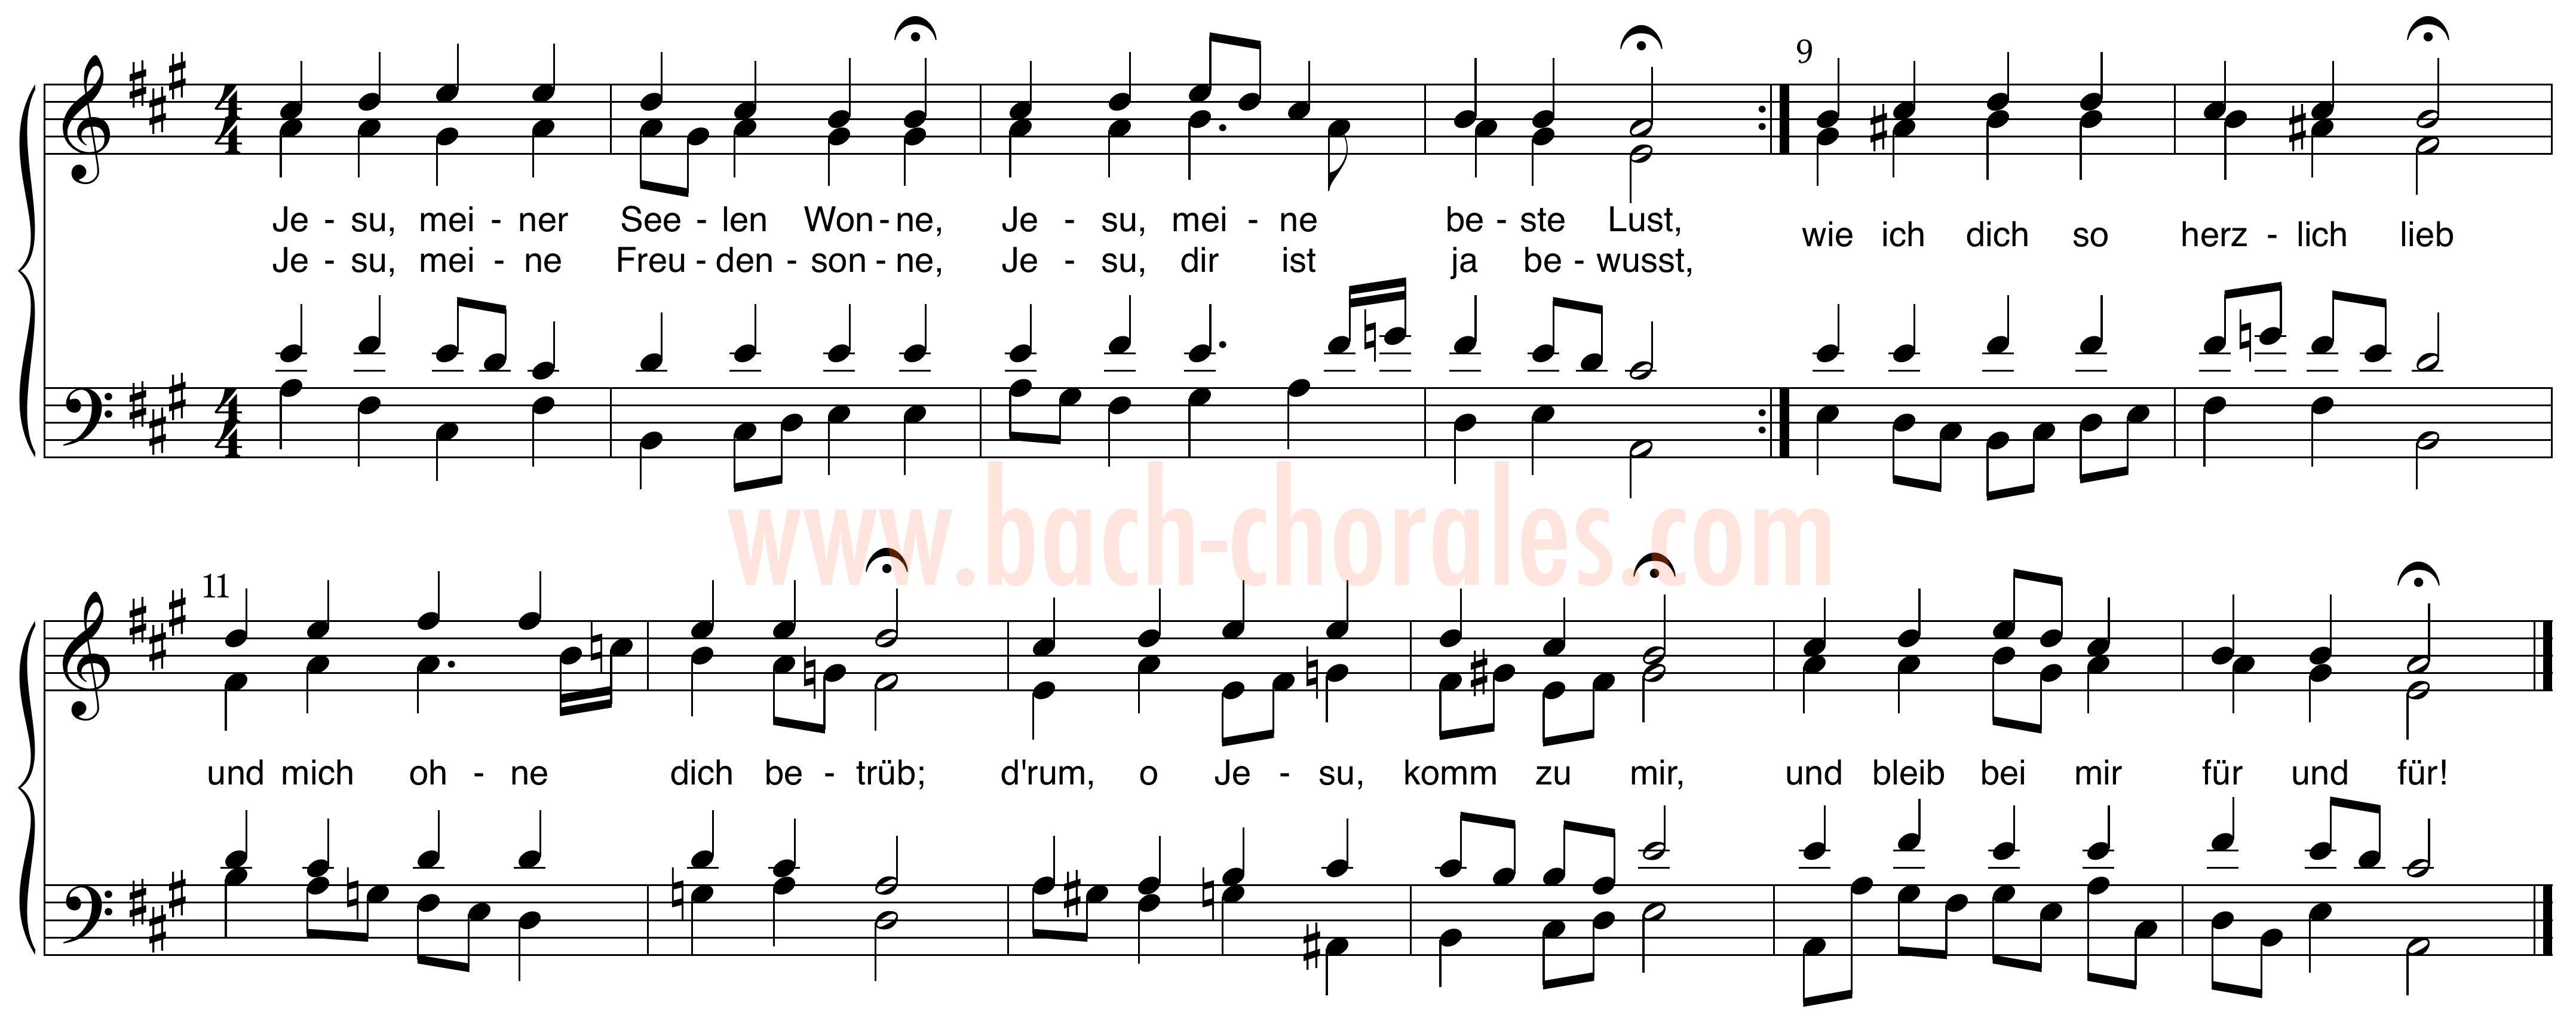 notenbeeld BWV 359 op https://www.bach-chorales.com/